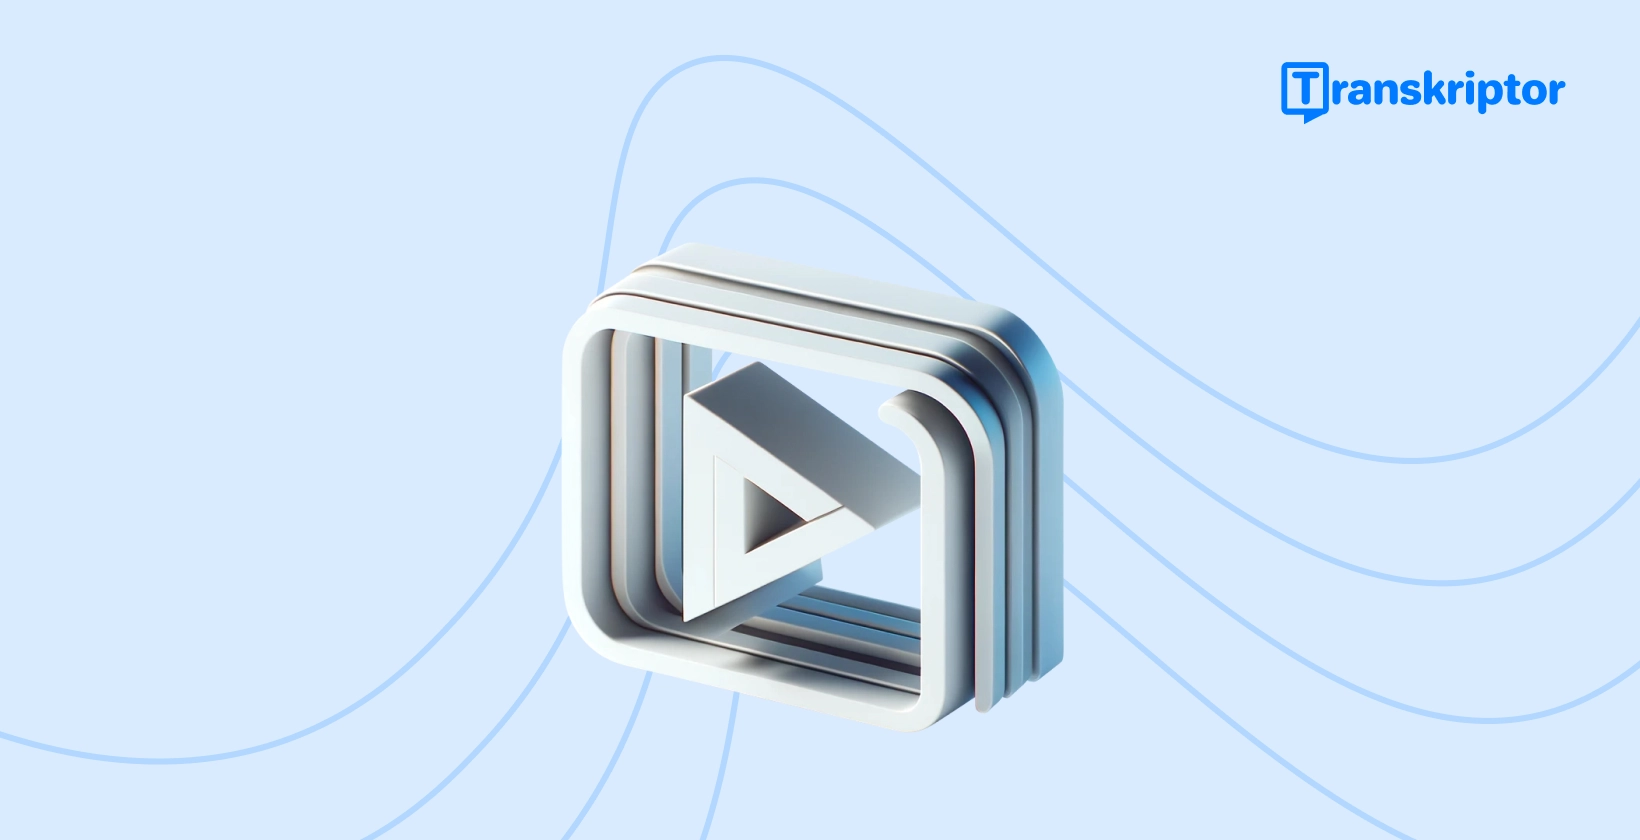 Detaljni natpis vodiča o dodavanju titlova videozapisima, s ikonom gumba za reprodukciju koja simbolizira uređivanje videozapisa.